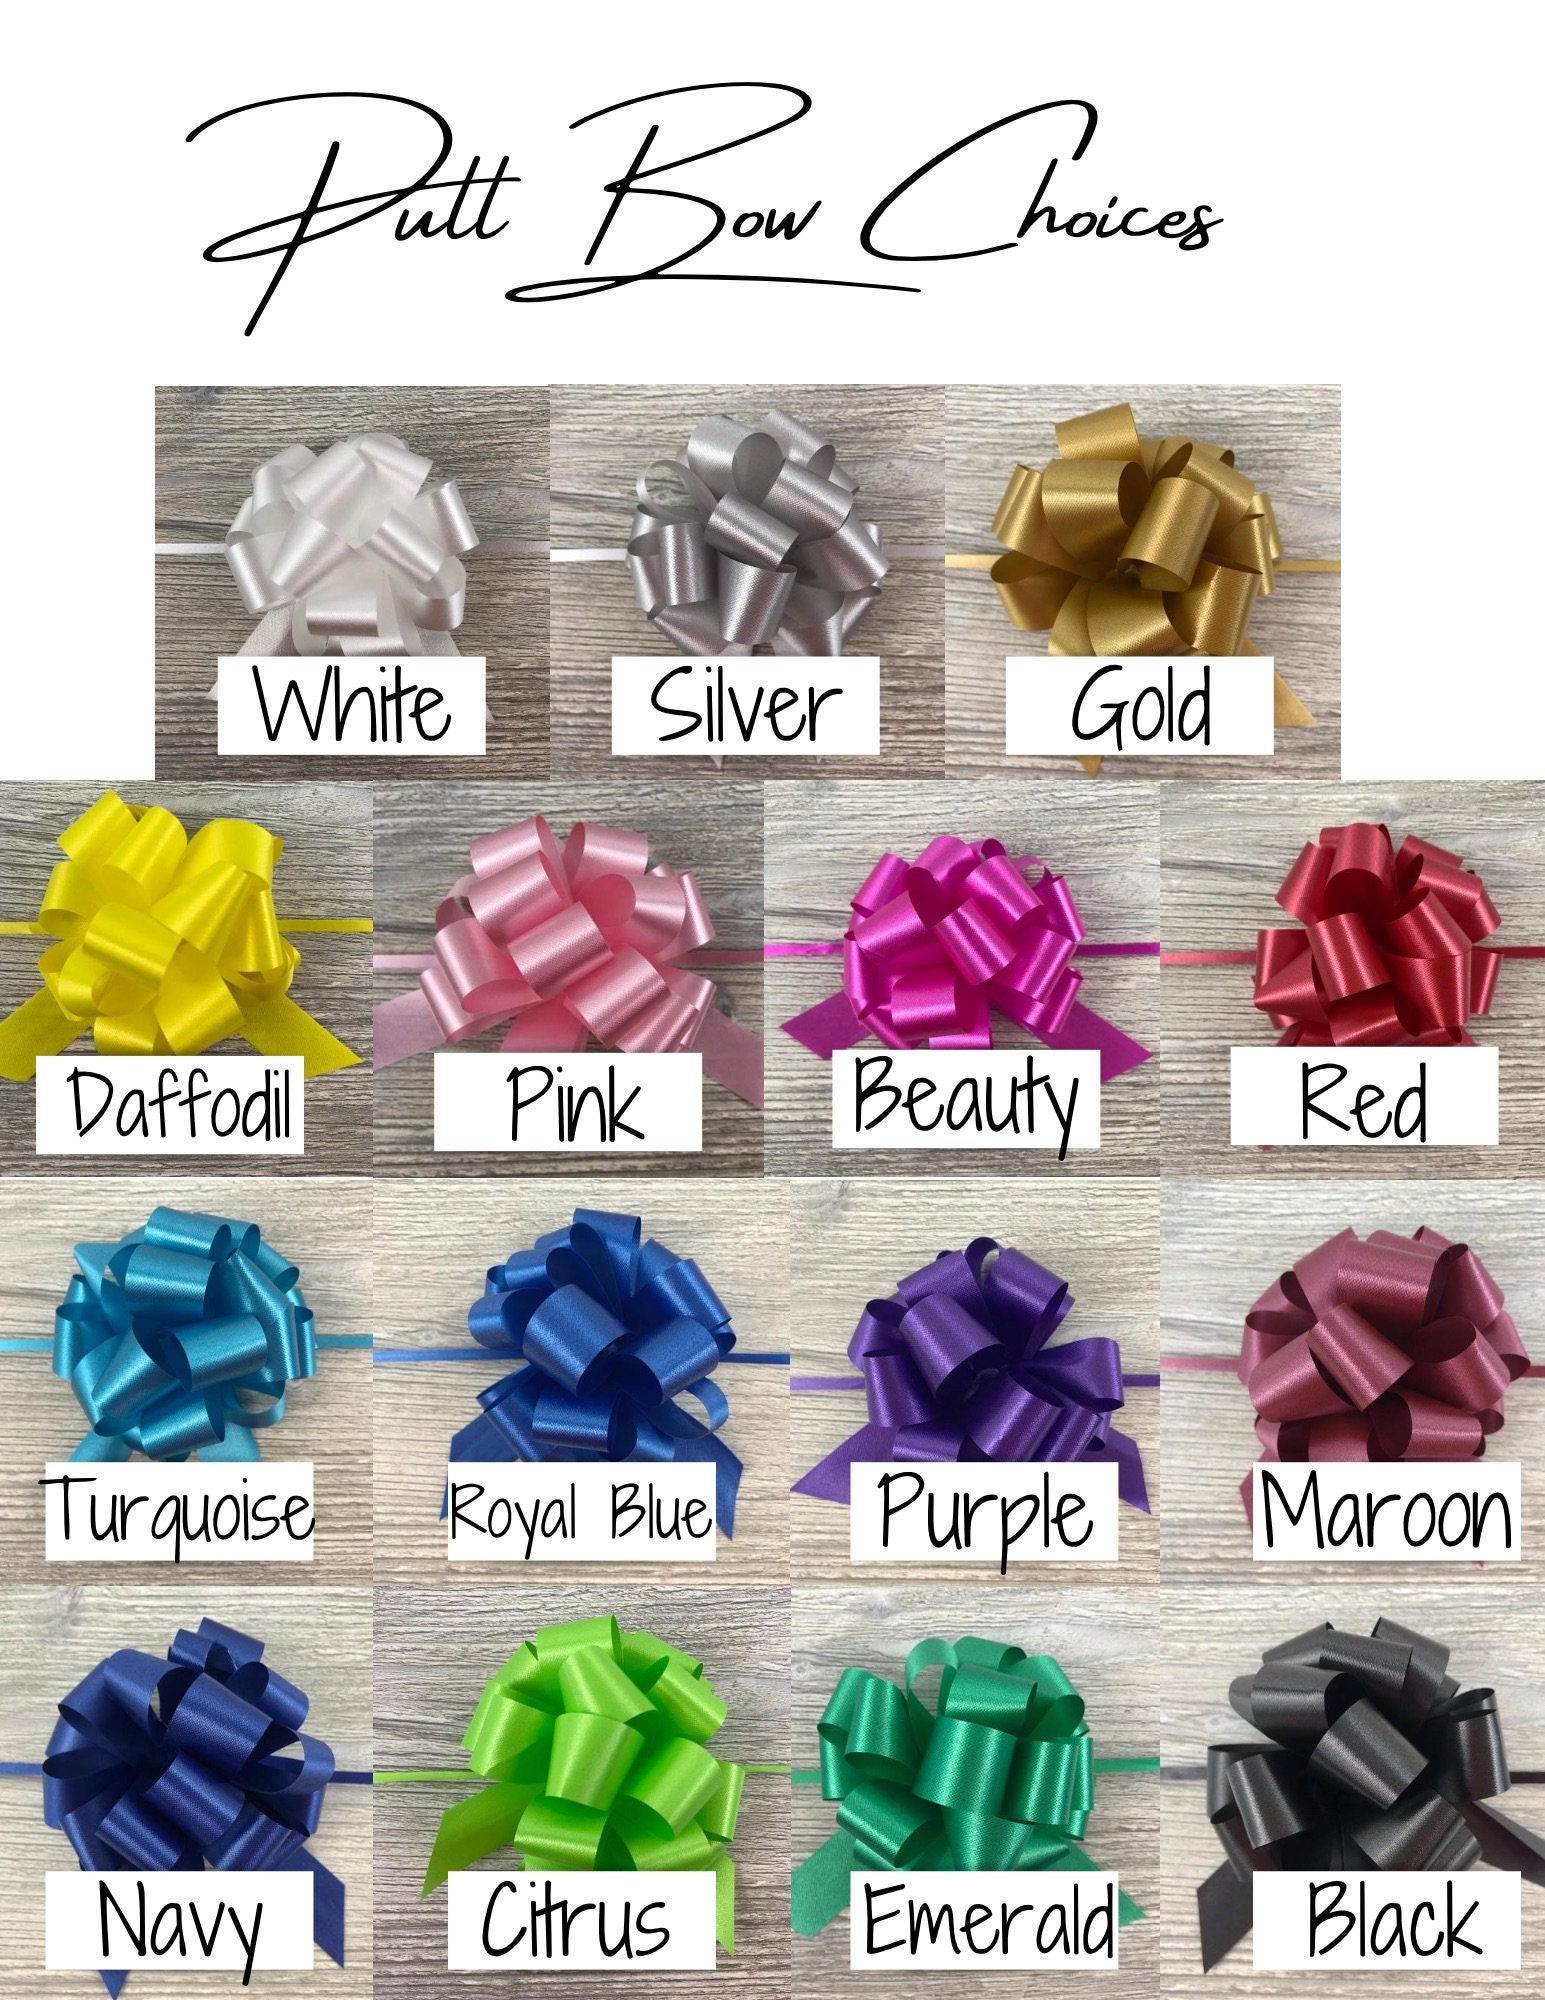 DIY Gift Basket Kit, Two Tone Split Willow, Empty Gift Basket, Gift Basket  Wrapping Kit, Gift Basket Packaging, Gift Basket Making Supplies 